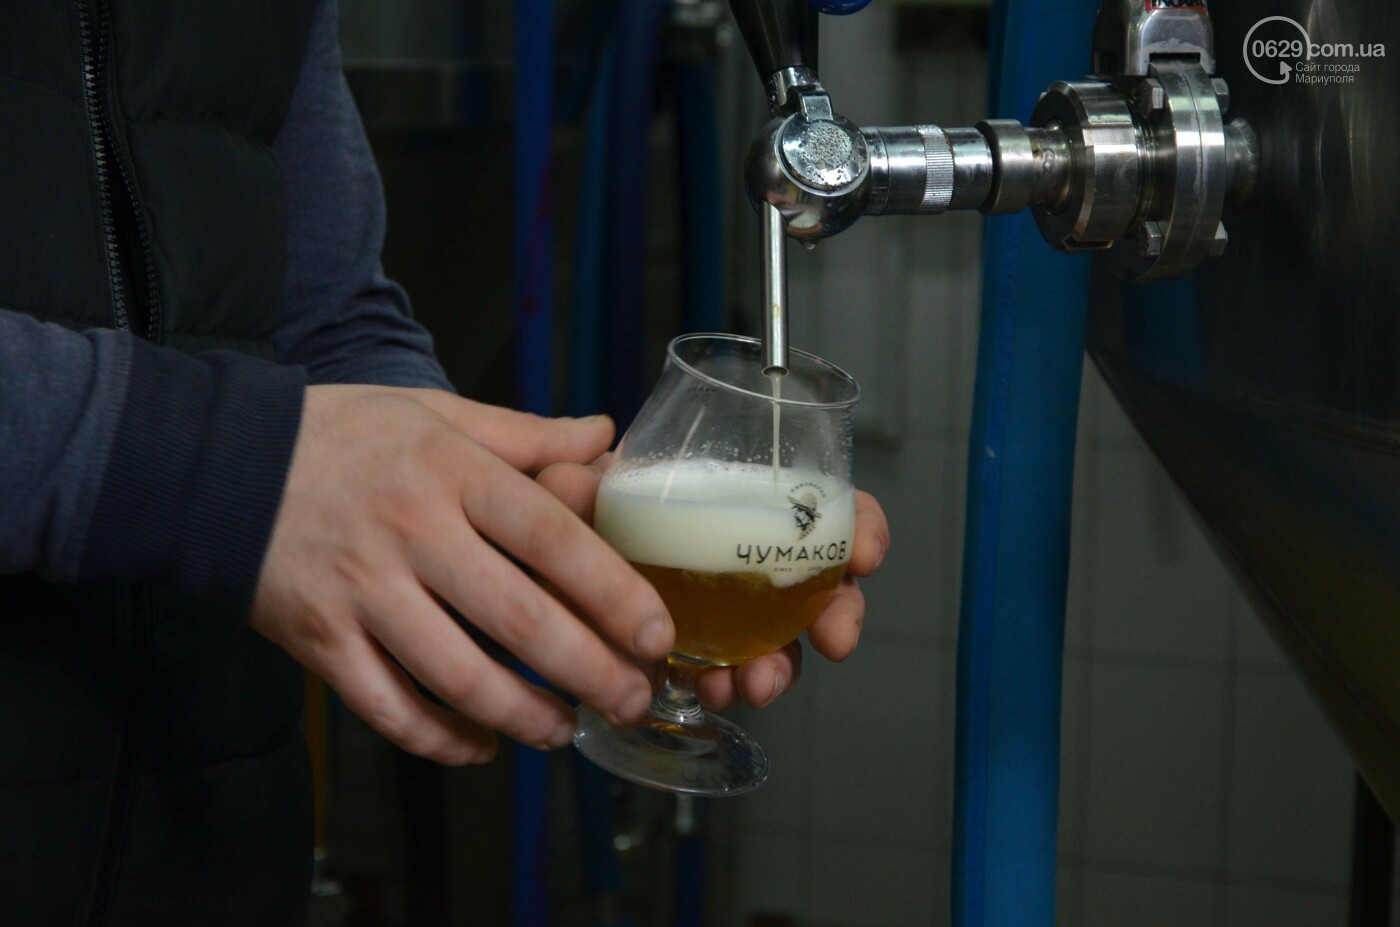 Как в Мариуполе варят пиво и с чем его пьют. История одной ревизии, - ФОТО, фото-14